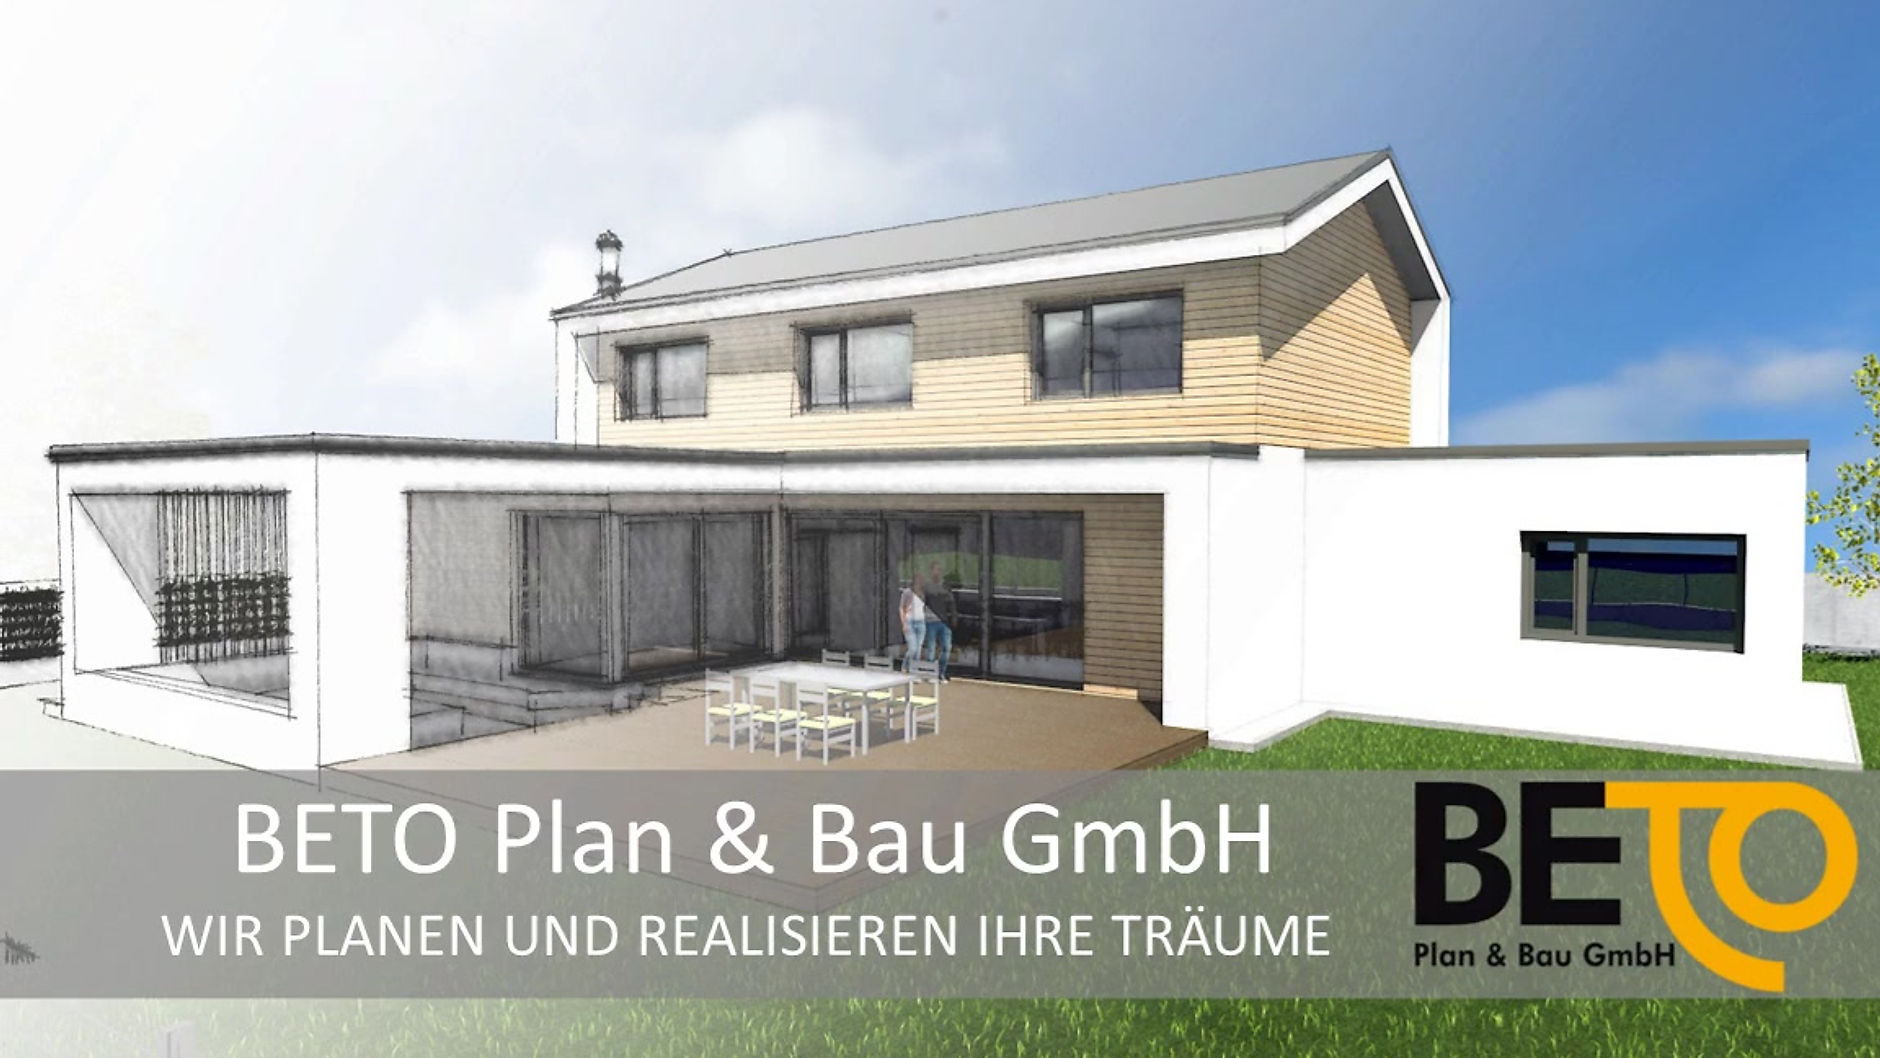 Imagefilm - BETO Plan & Bau GmbH